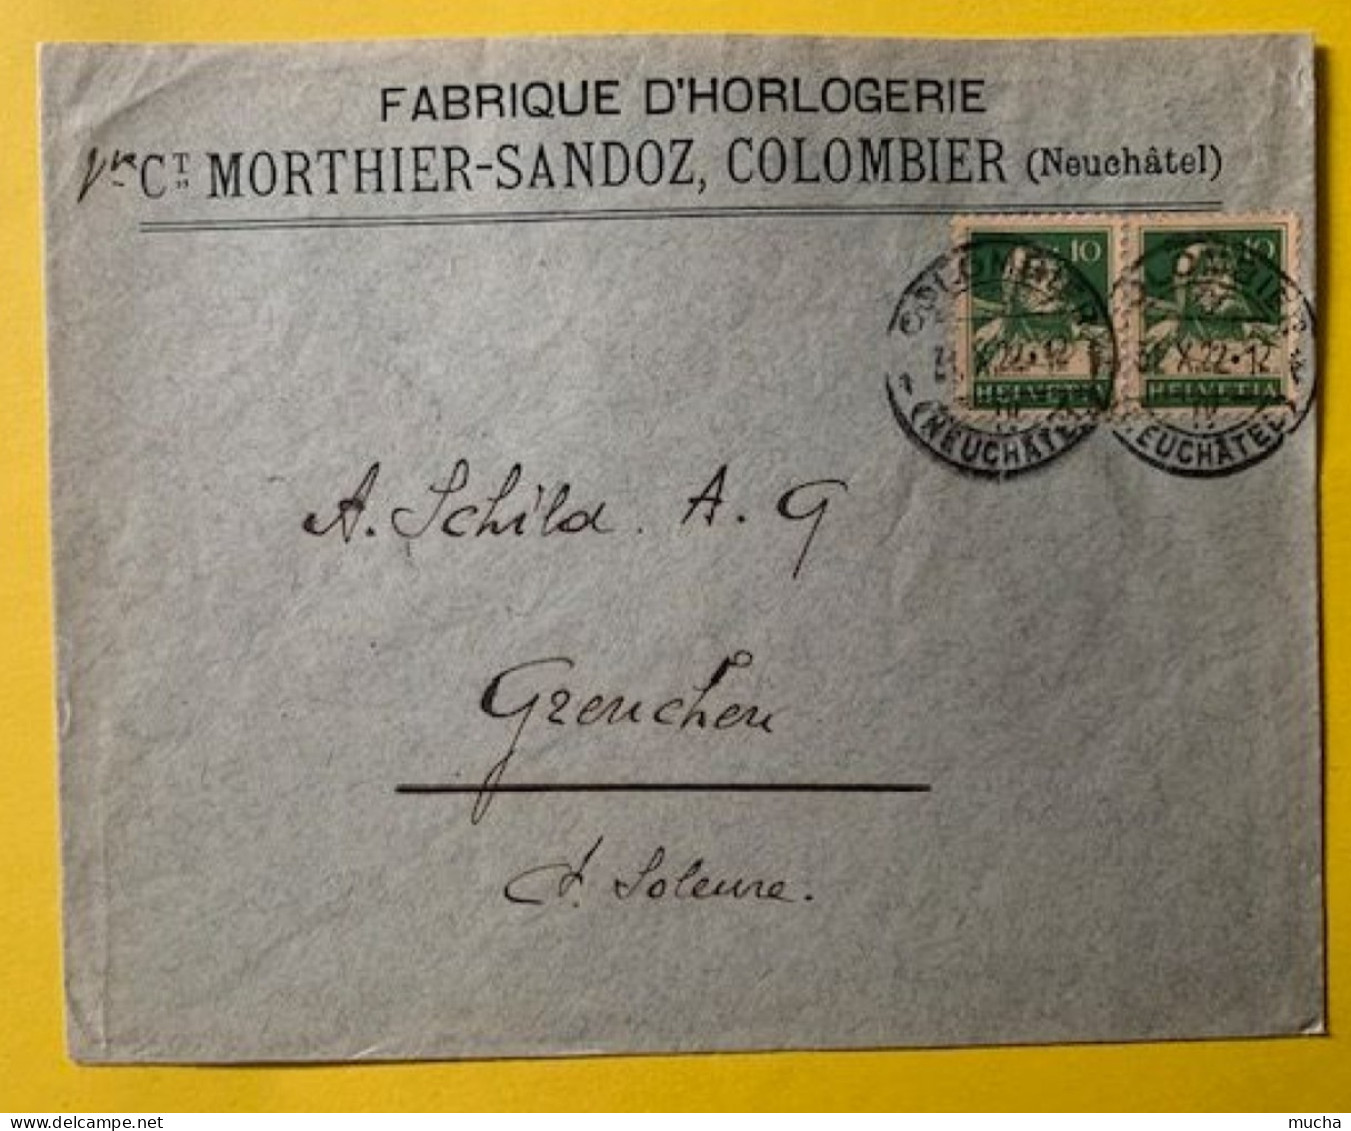 70030 - Suisse Lettre Fabrique D'Horlogerie Vve Morthier-Sandoz Colombier 31.10.1922 - Clocks